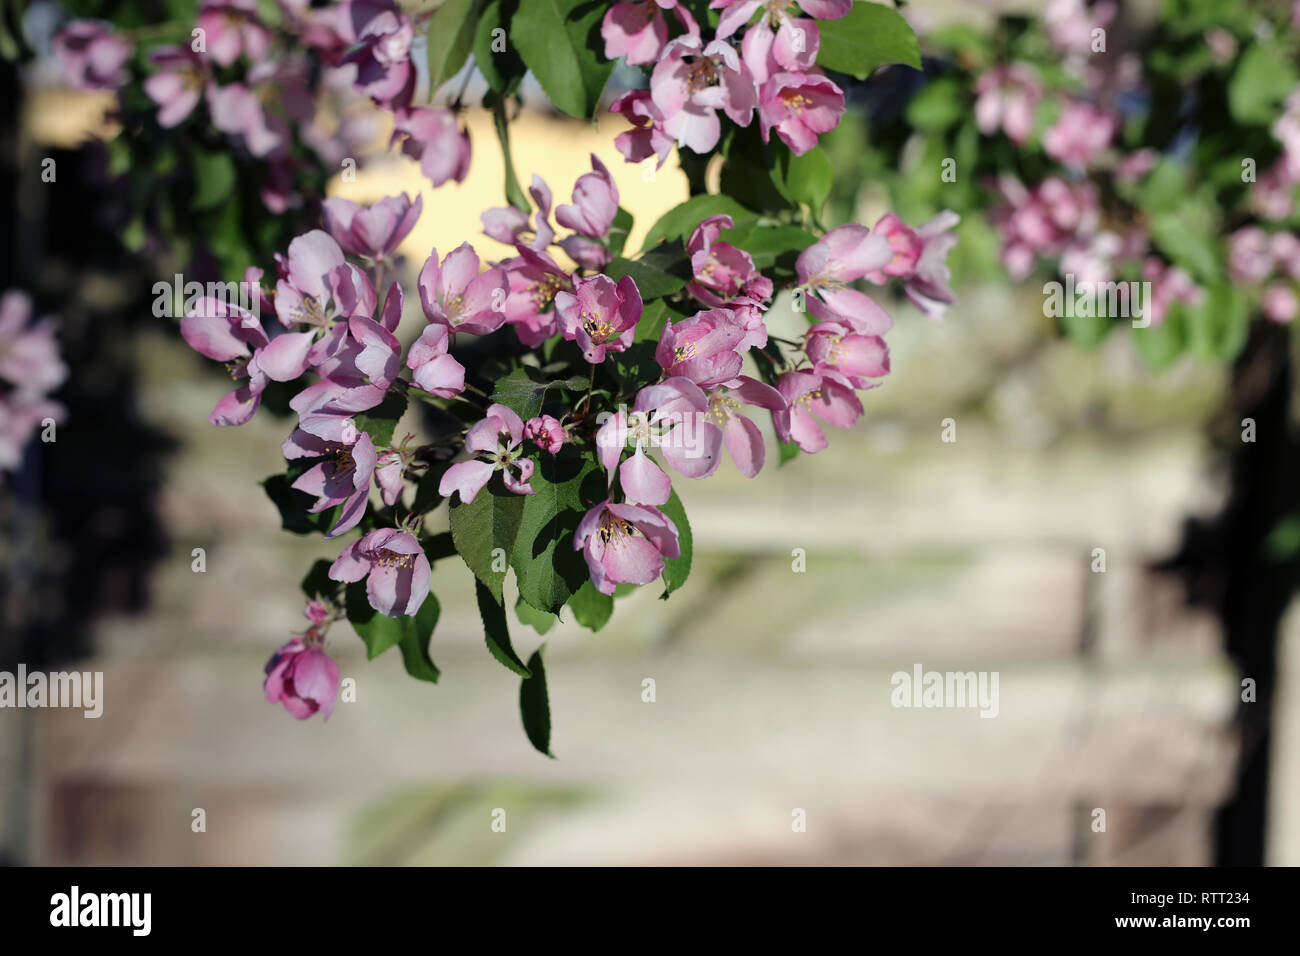 Rosa fiori di ciliegio in un ramo di albero durante una soleggiata giornata di primavera. Bella, carino e fiori femminili. Un primo piano immagine. Immagine a colori. Foto Stock